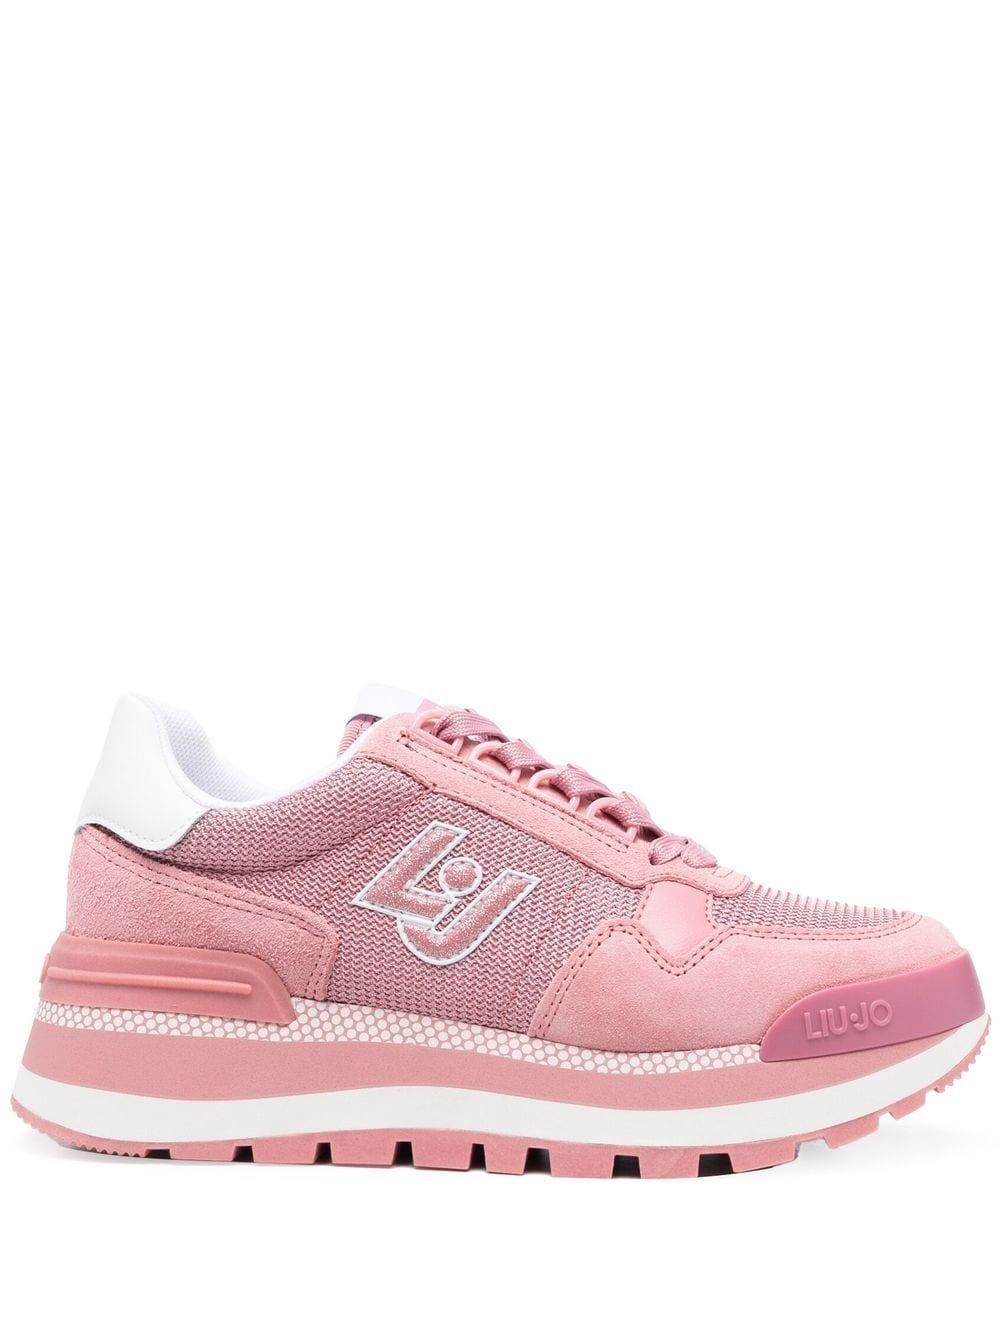 Liu Jo Logo Patch Sneakers in Pink | Lyst